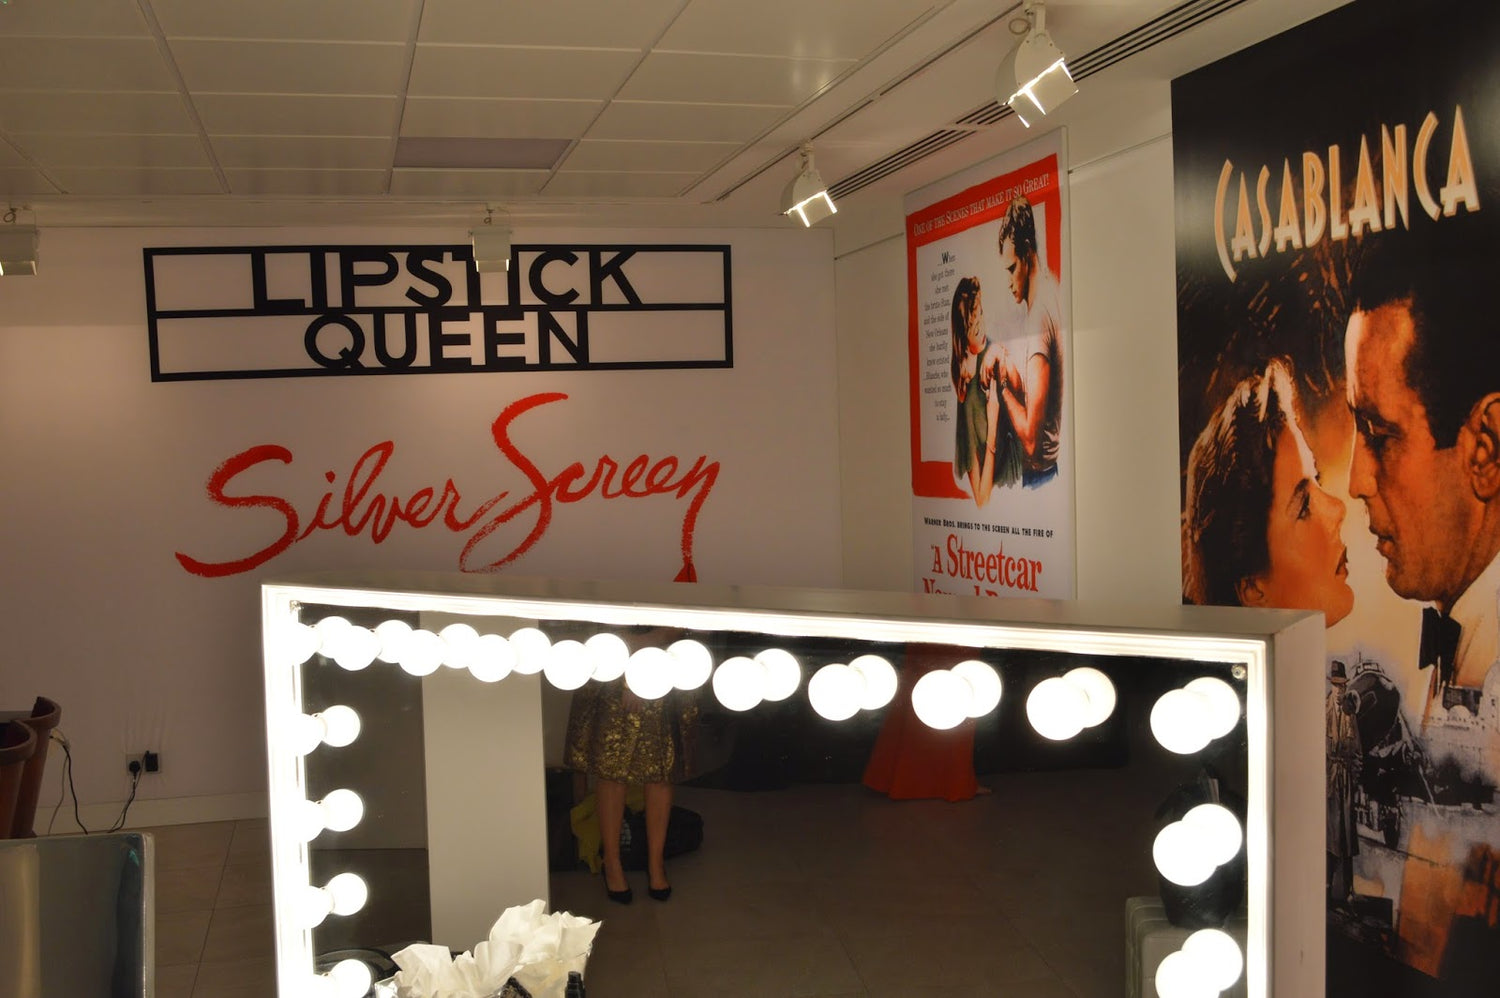 Lipstick Queen Silver Screen Collection